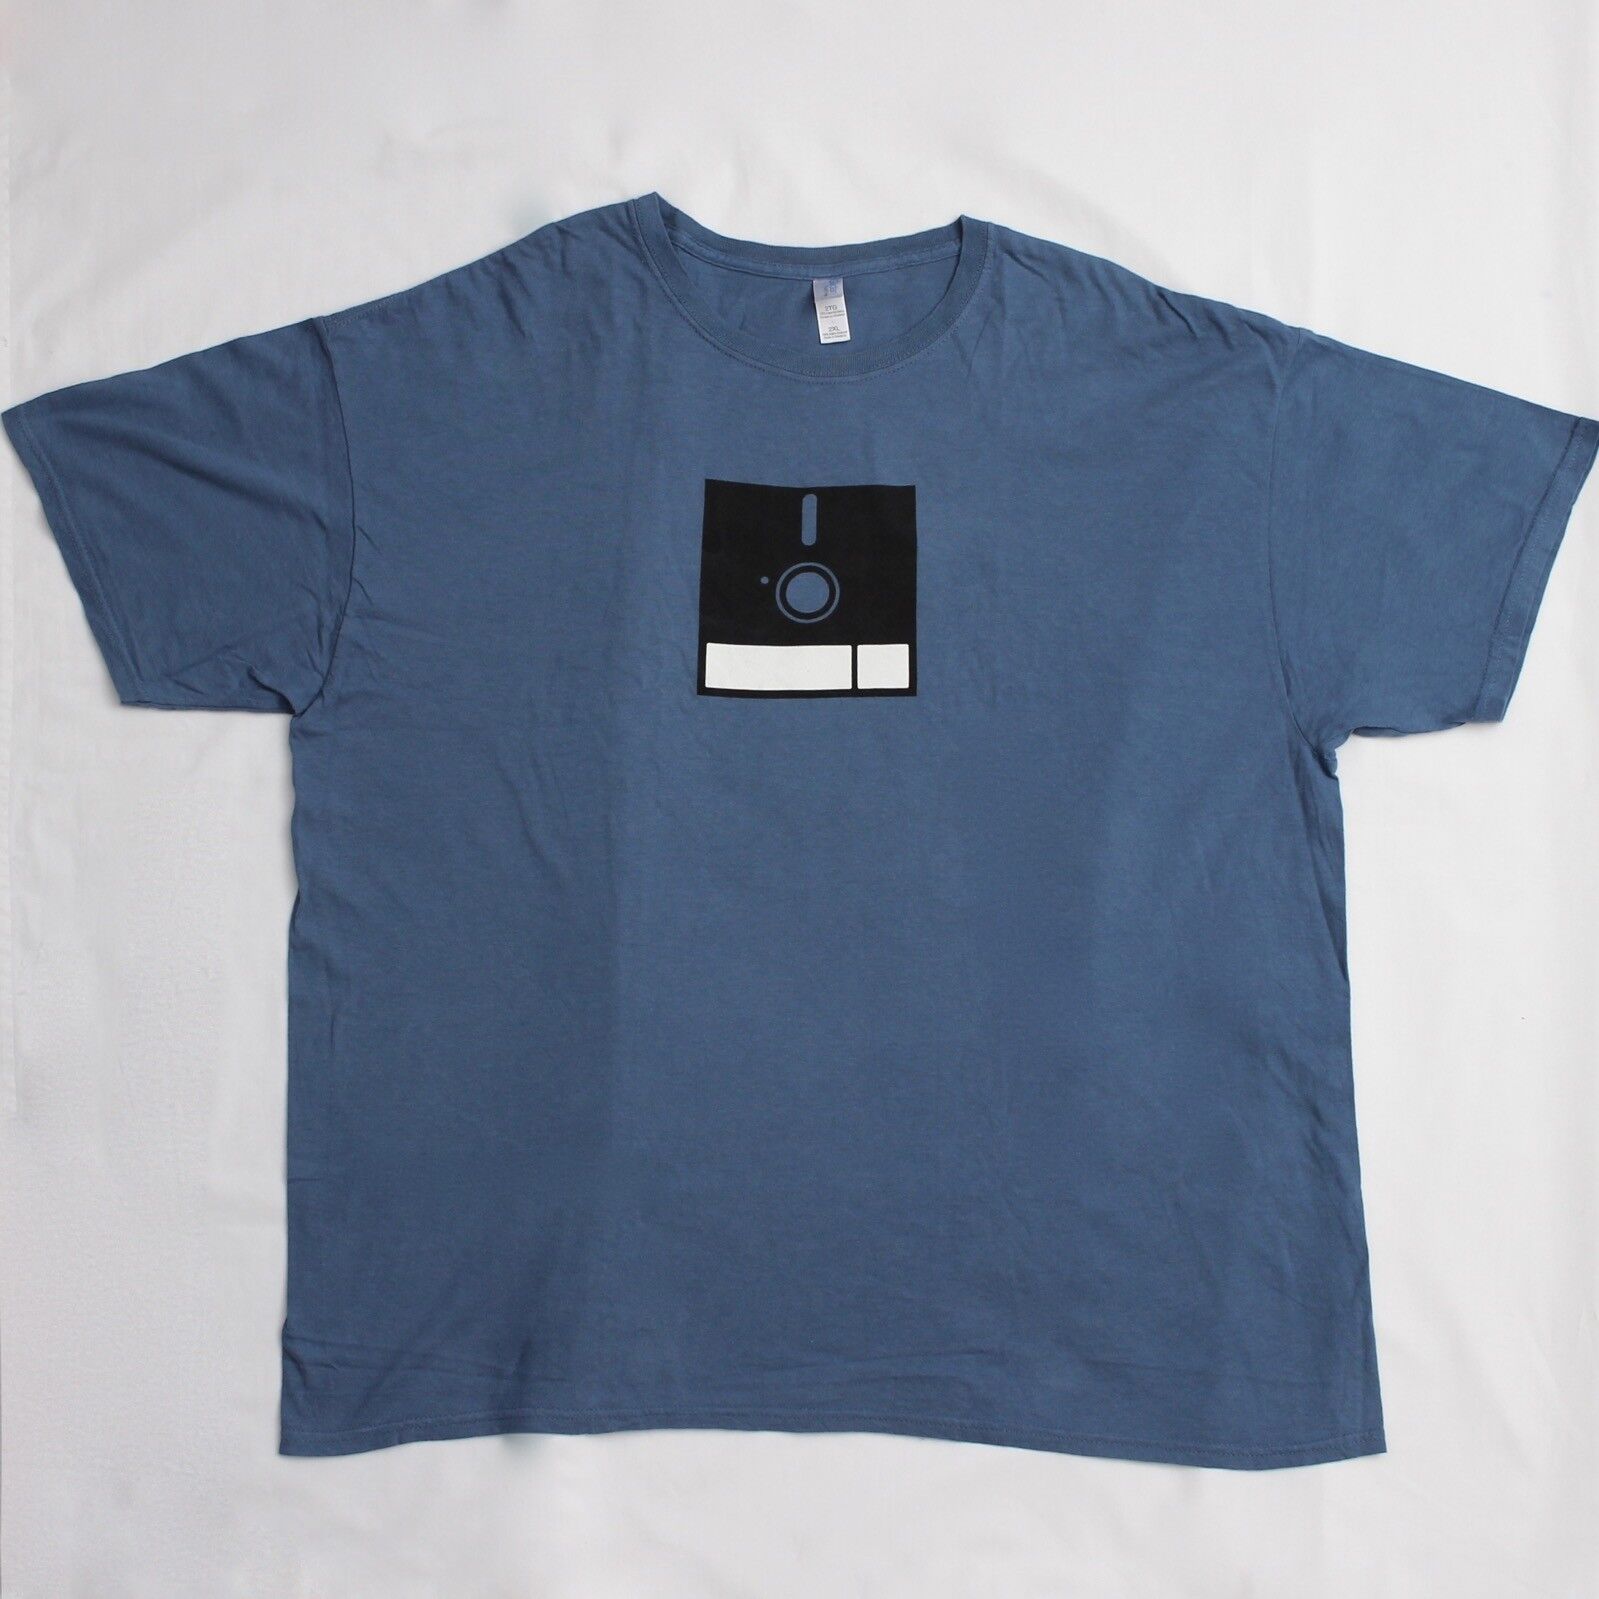 Genuine IBM Computer ‘Floppy Disk’ T-Shirt (Size 2XL)